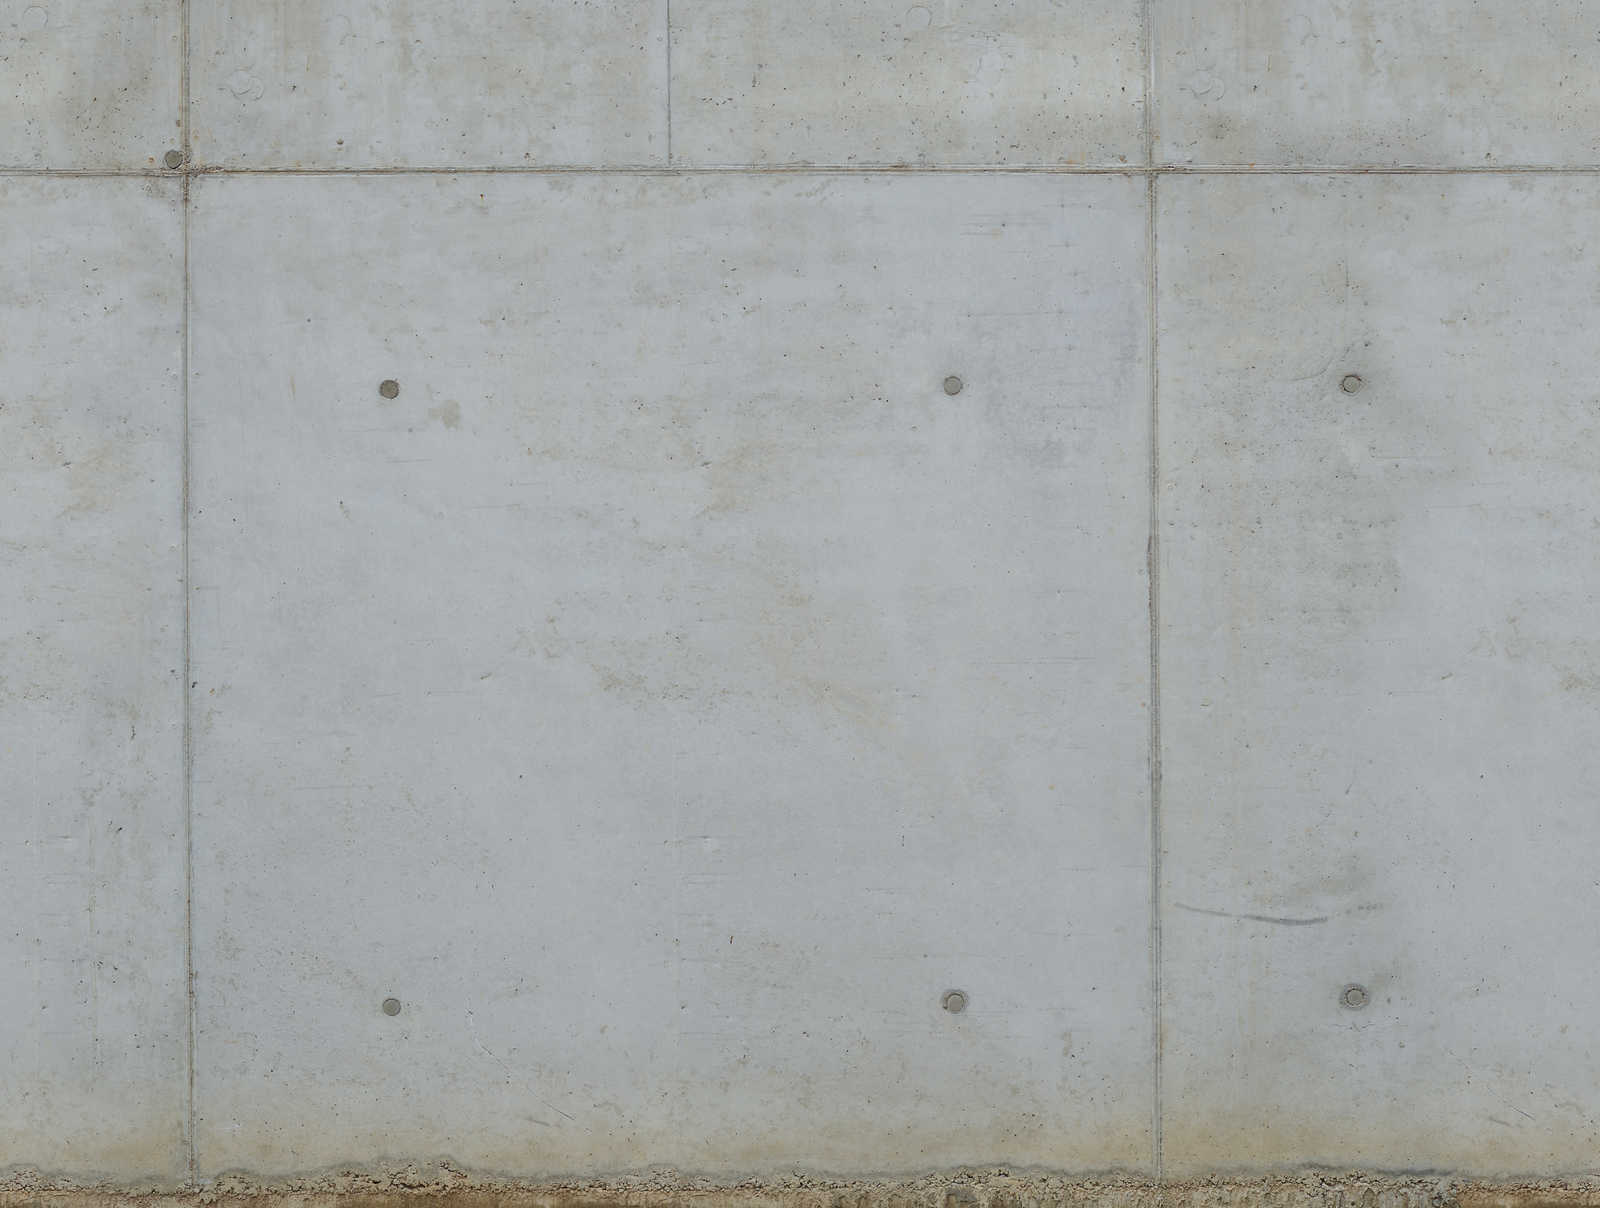             Betonlook behang in koele kleuren - grijs, beige
        